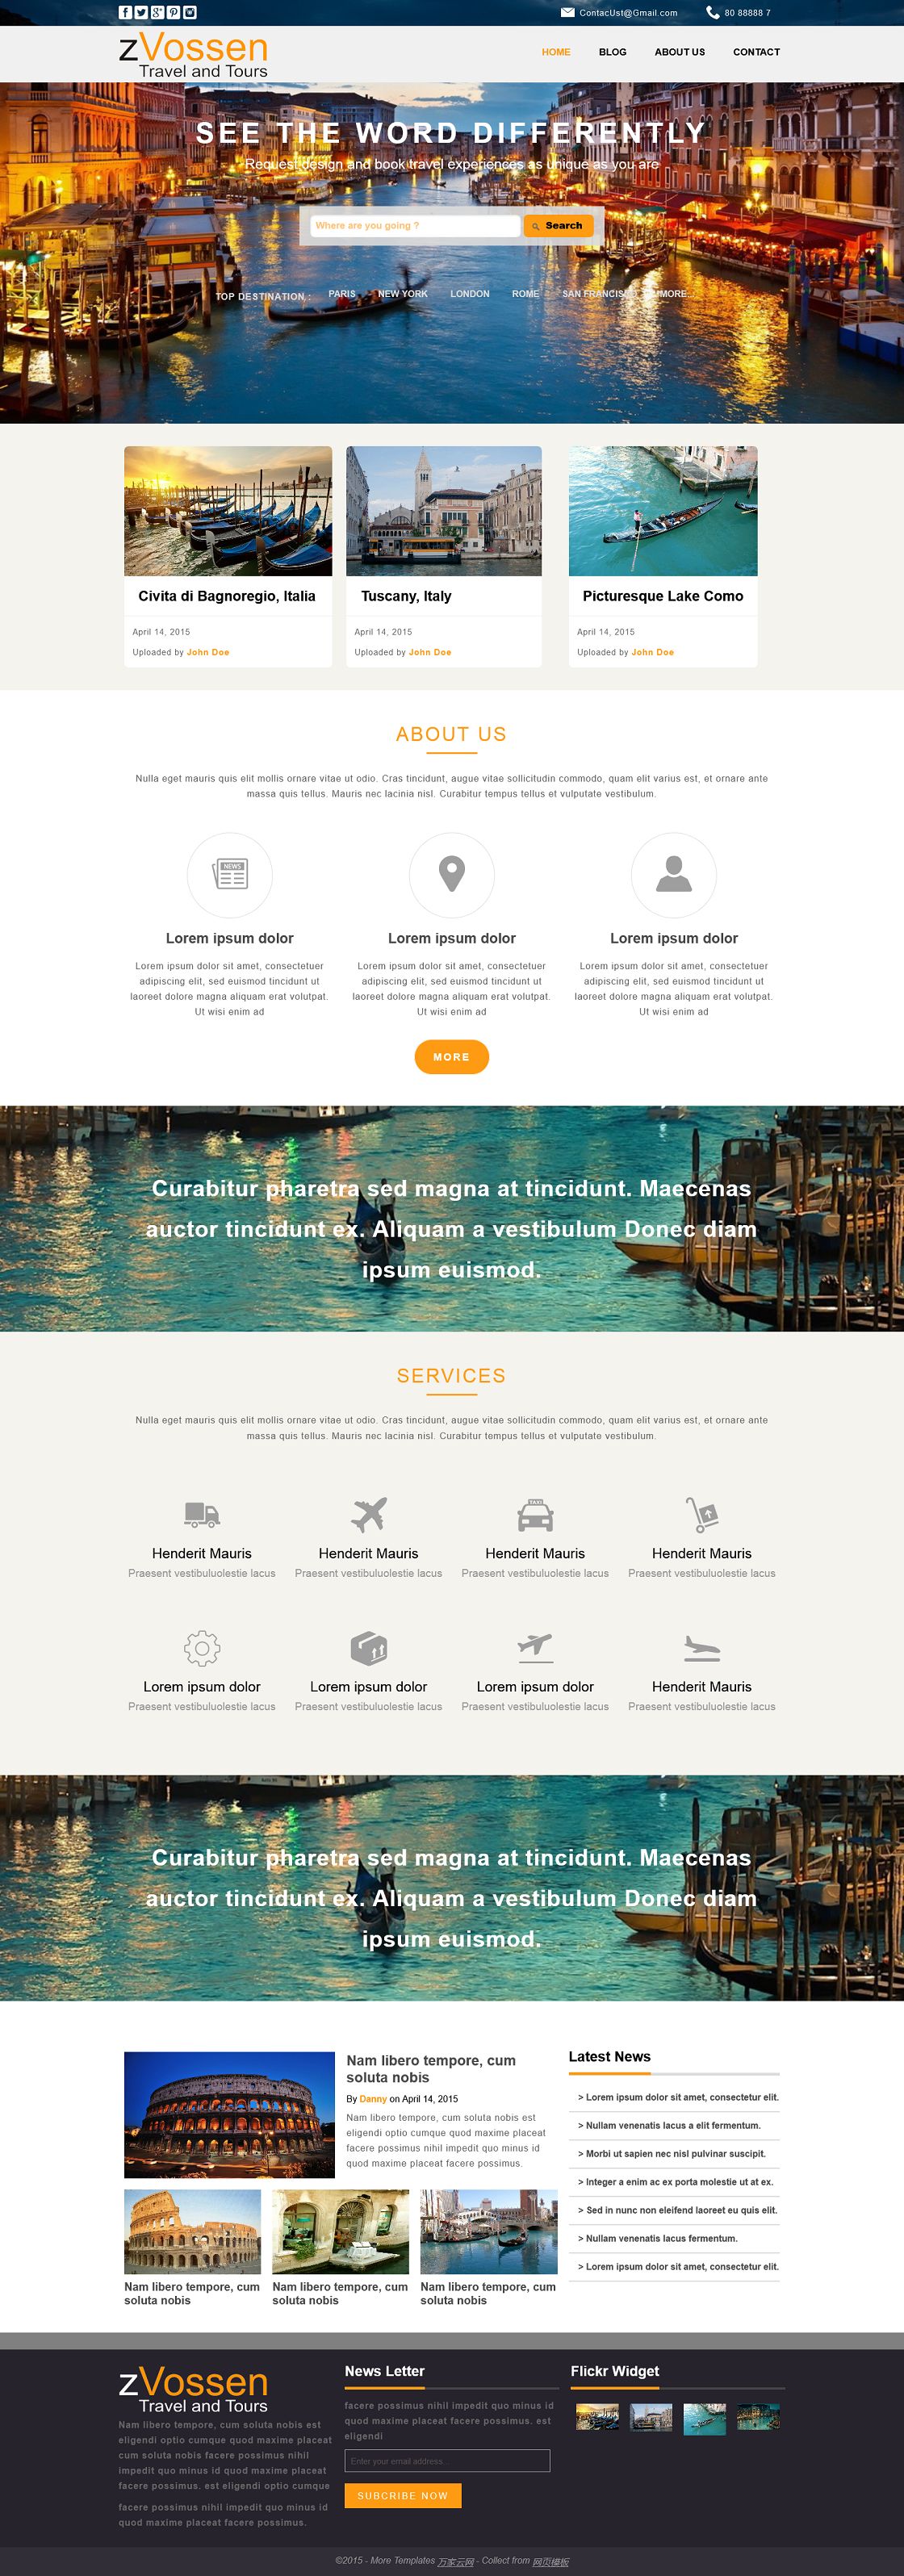 漂亮宽屏旅游公司企业网站模板